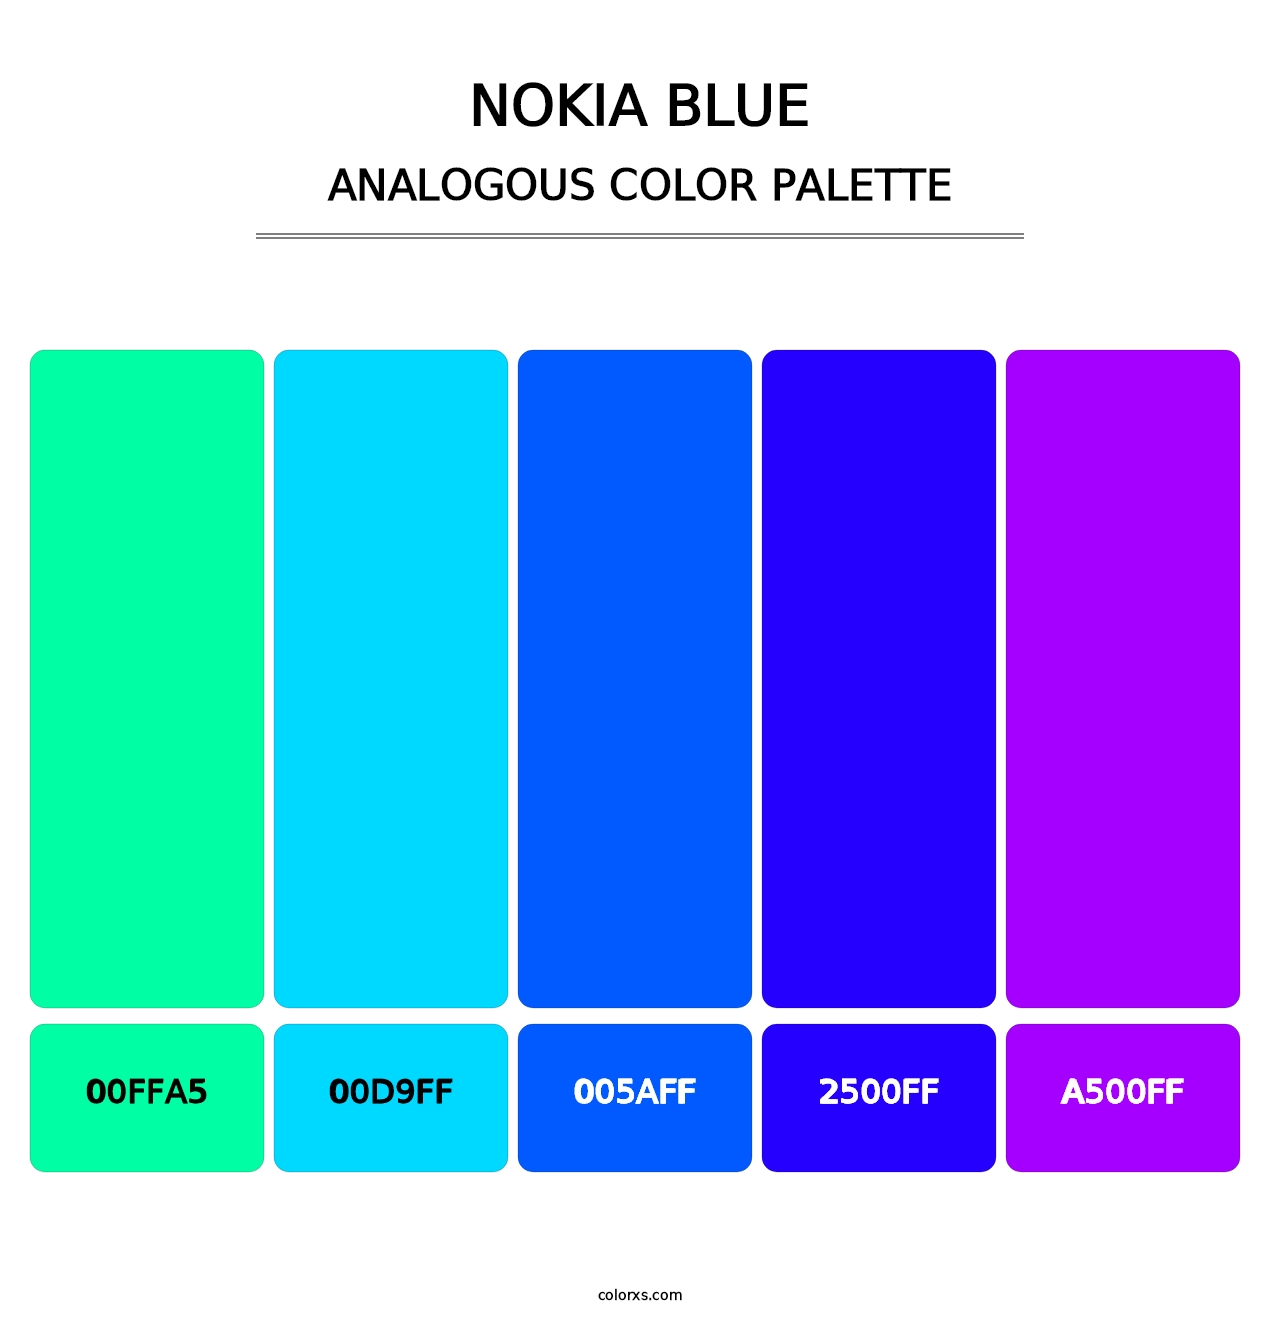 Nokia Blue - Analogous Color Palette